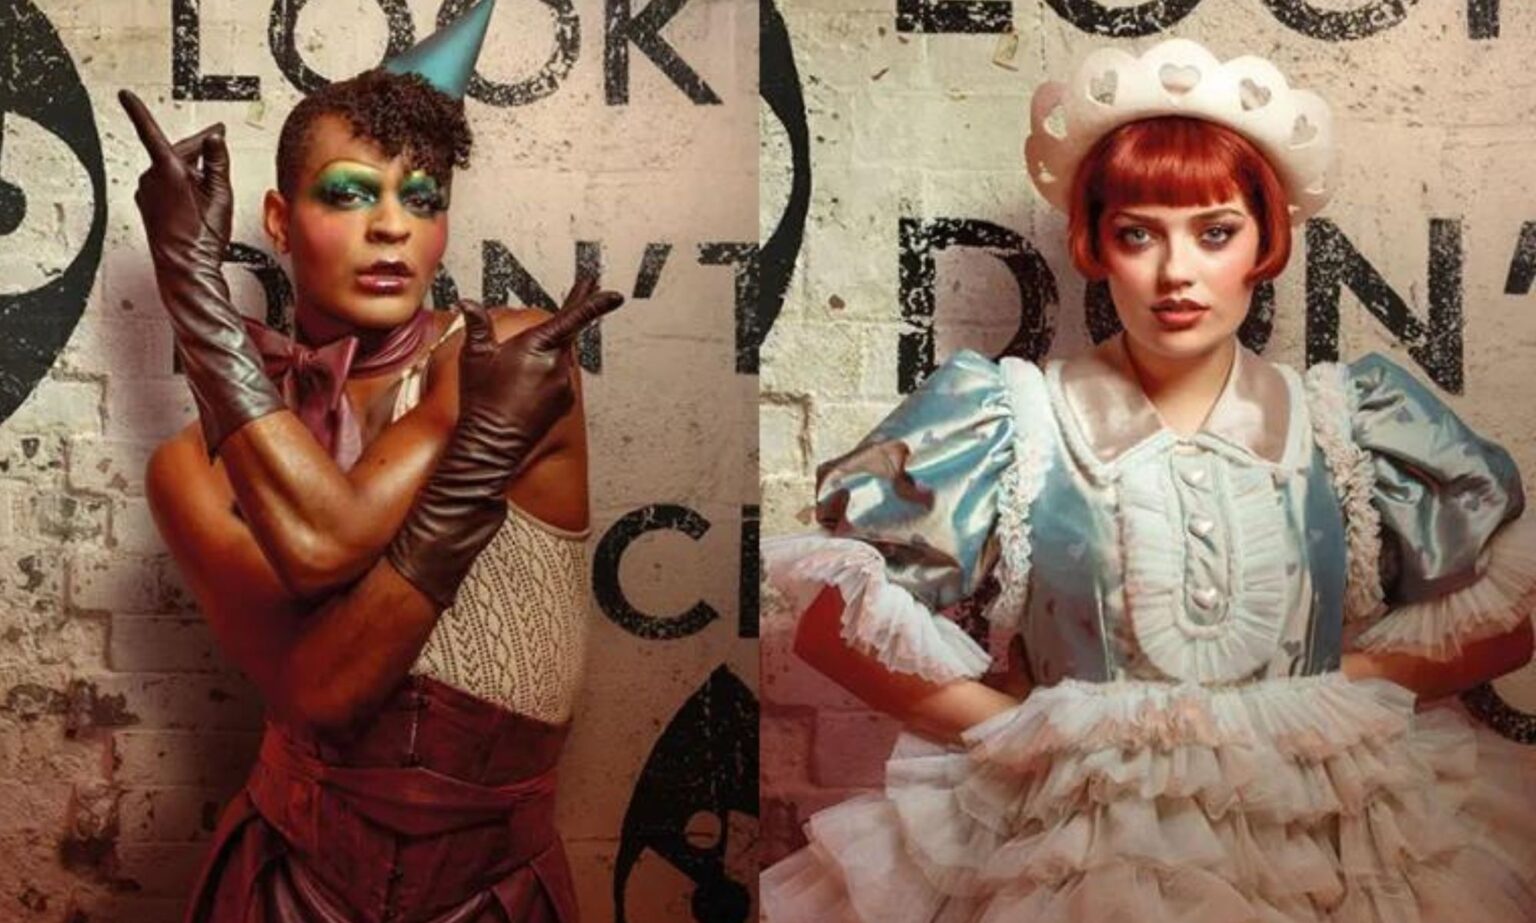 Layton & Rhea star in bold Cabaret.